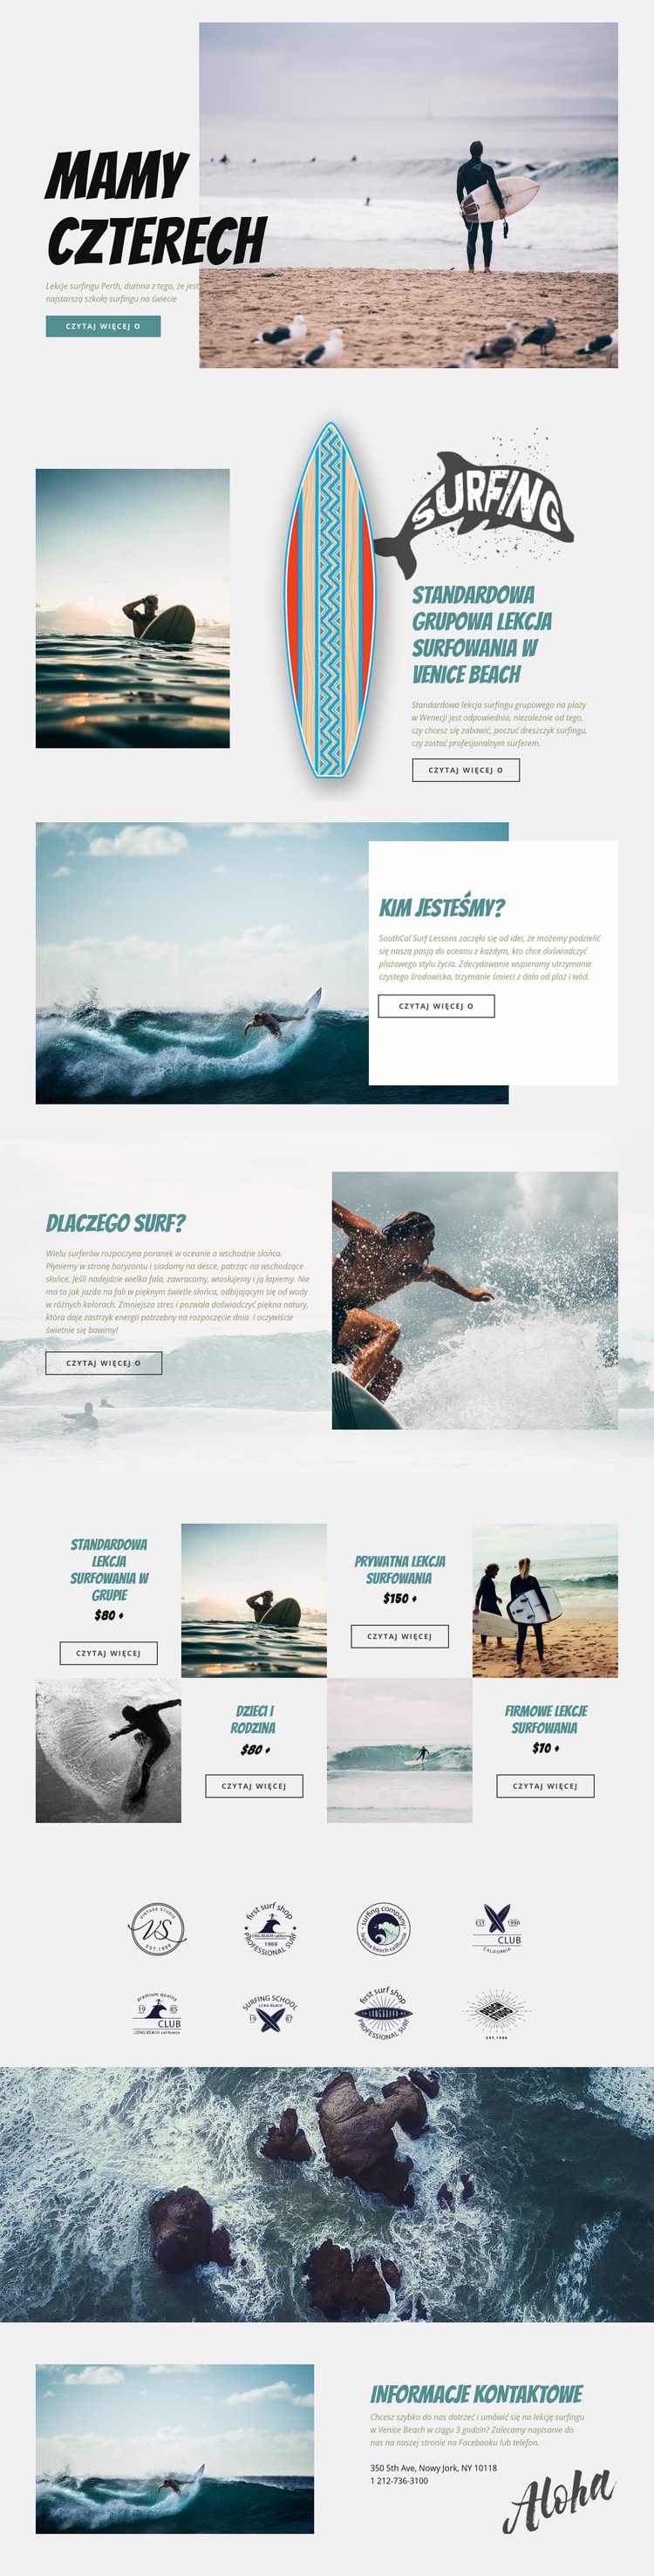 Surfing Makieta strony internetowej